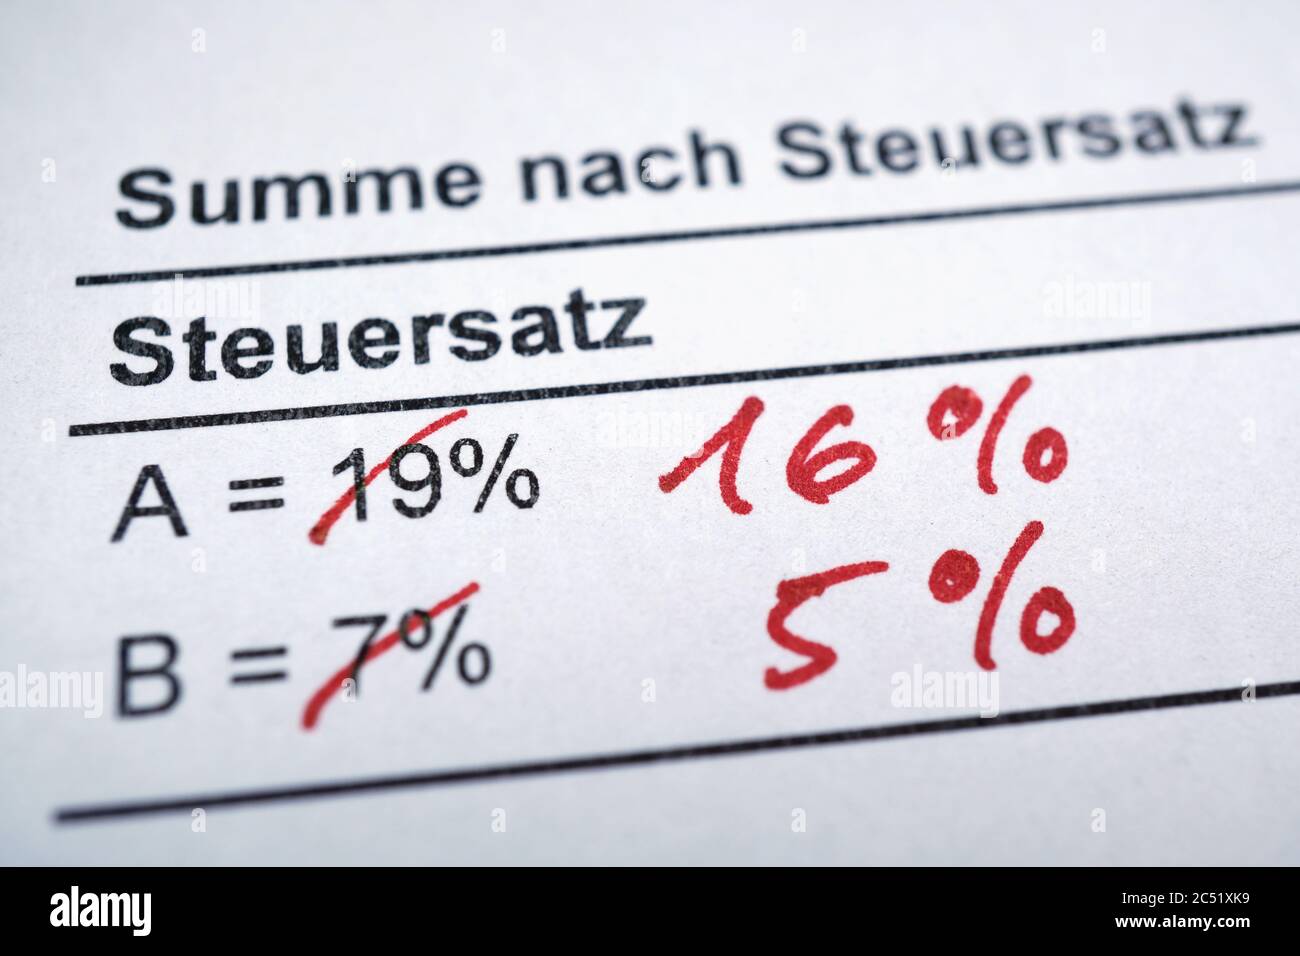 Mehrwertsteuer ou MWSt - taxe sur la valeur ajoutée en allemand - réduction des taux de 19 à 16 et de 7 à 5 pour cent en Allemagne Banque D'Images